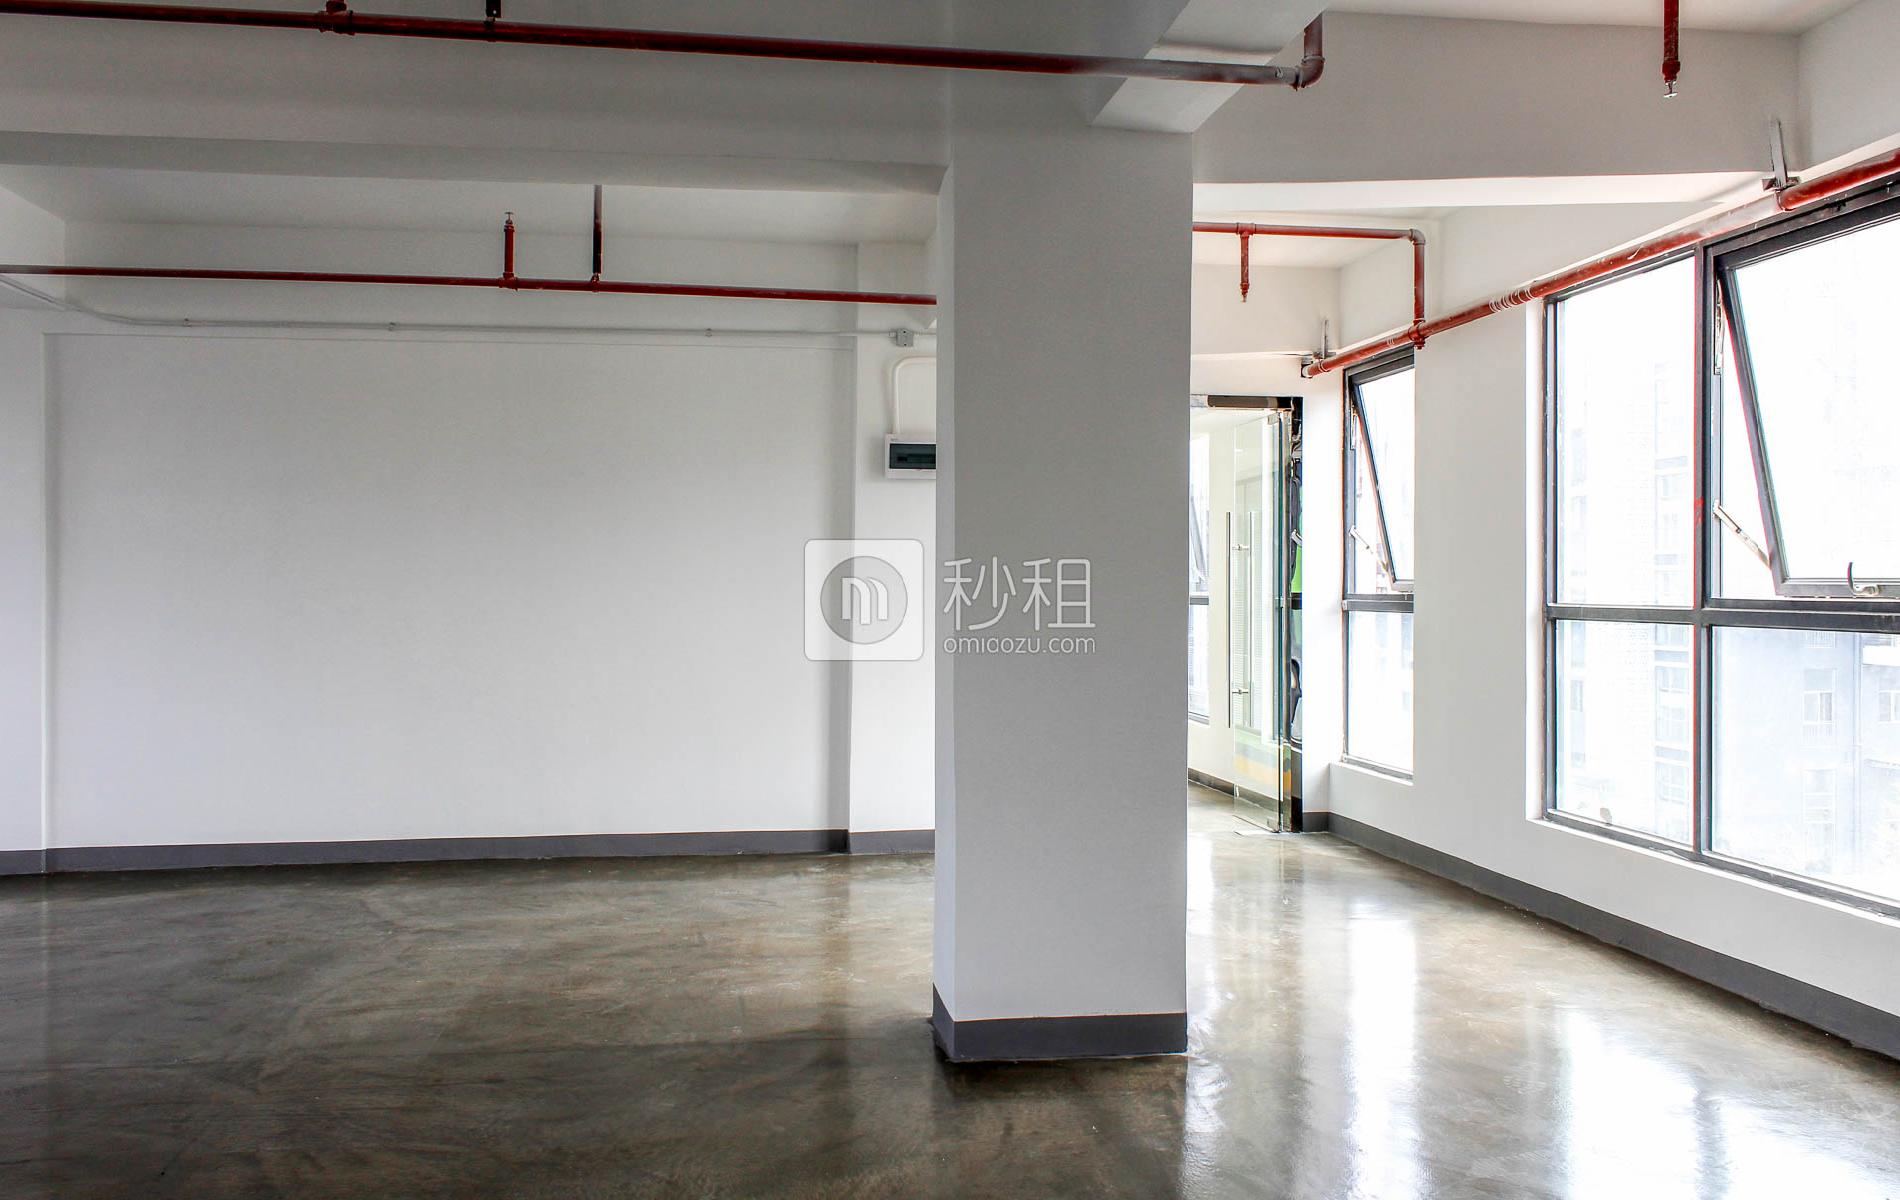 智慧谷创新园（坂田分园）写字楼出租152平米简装办公室68元/m².月